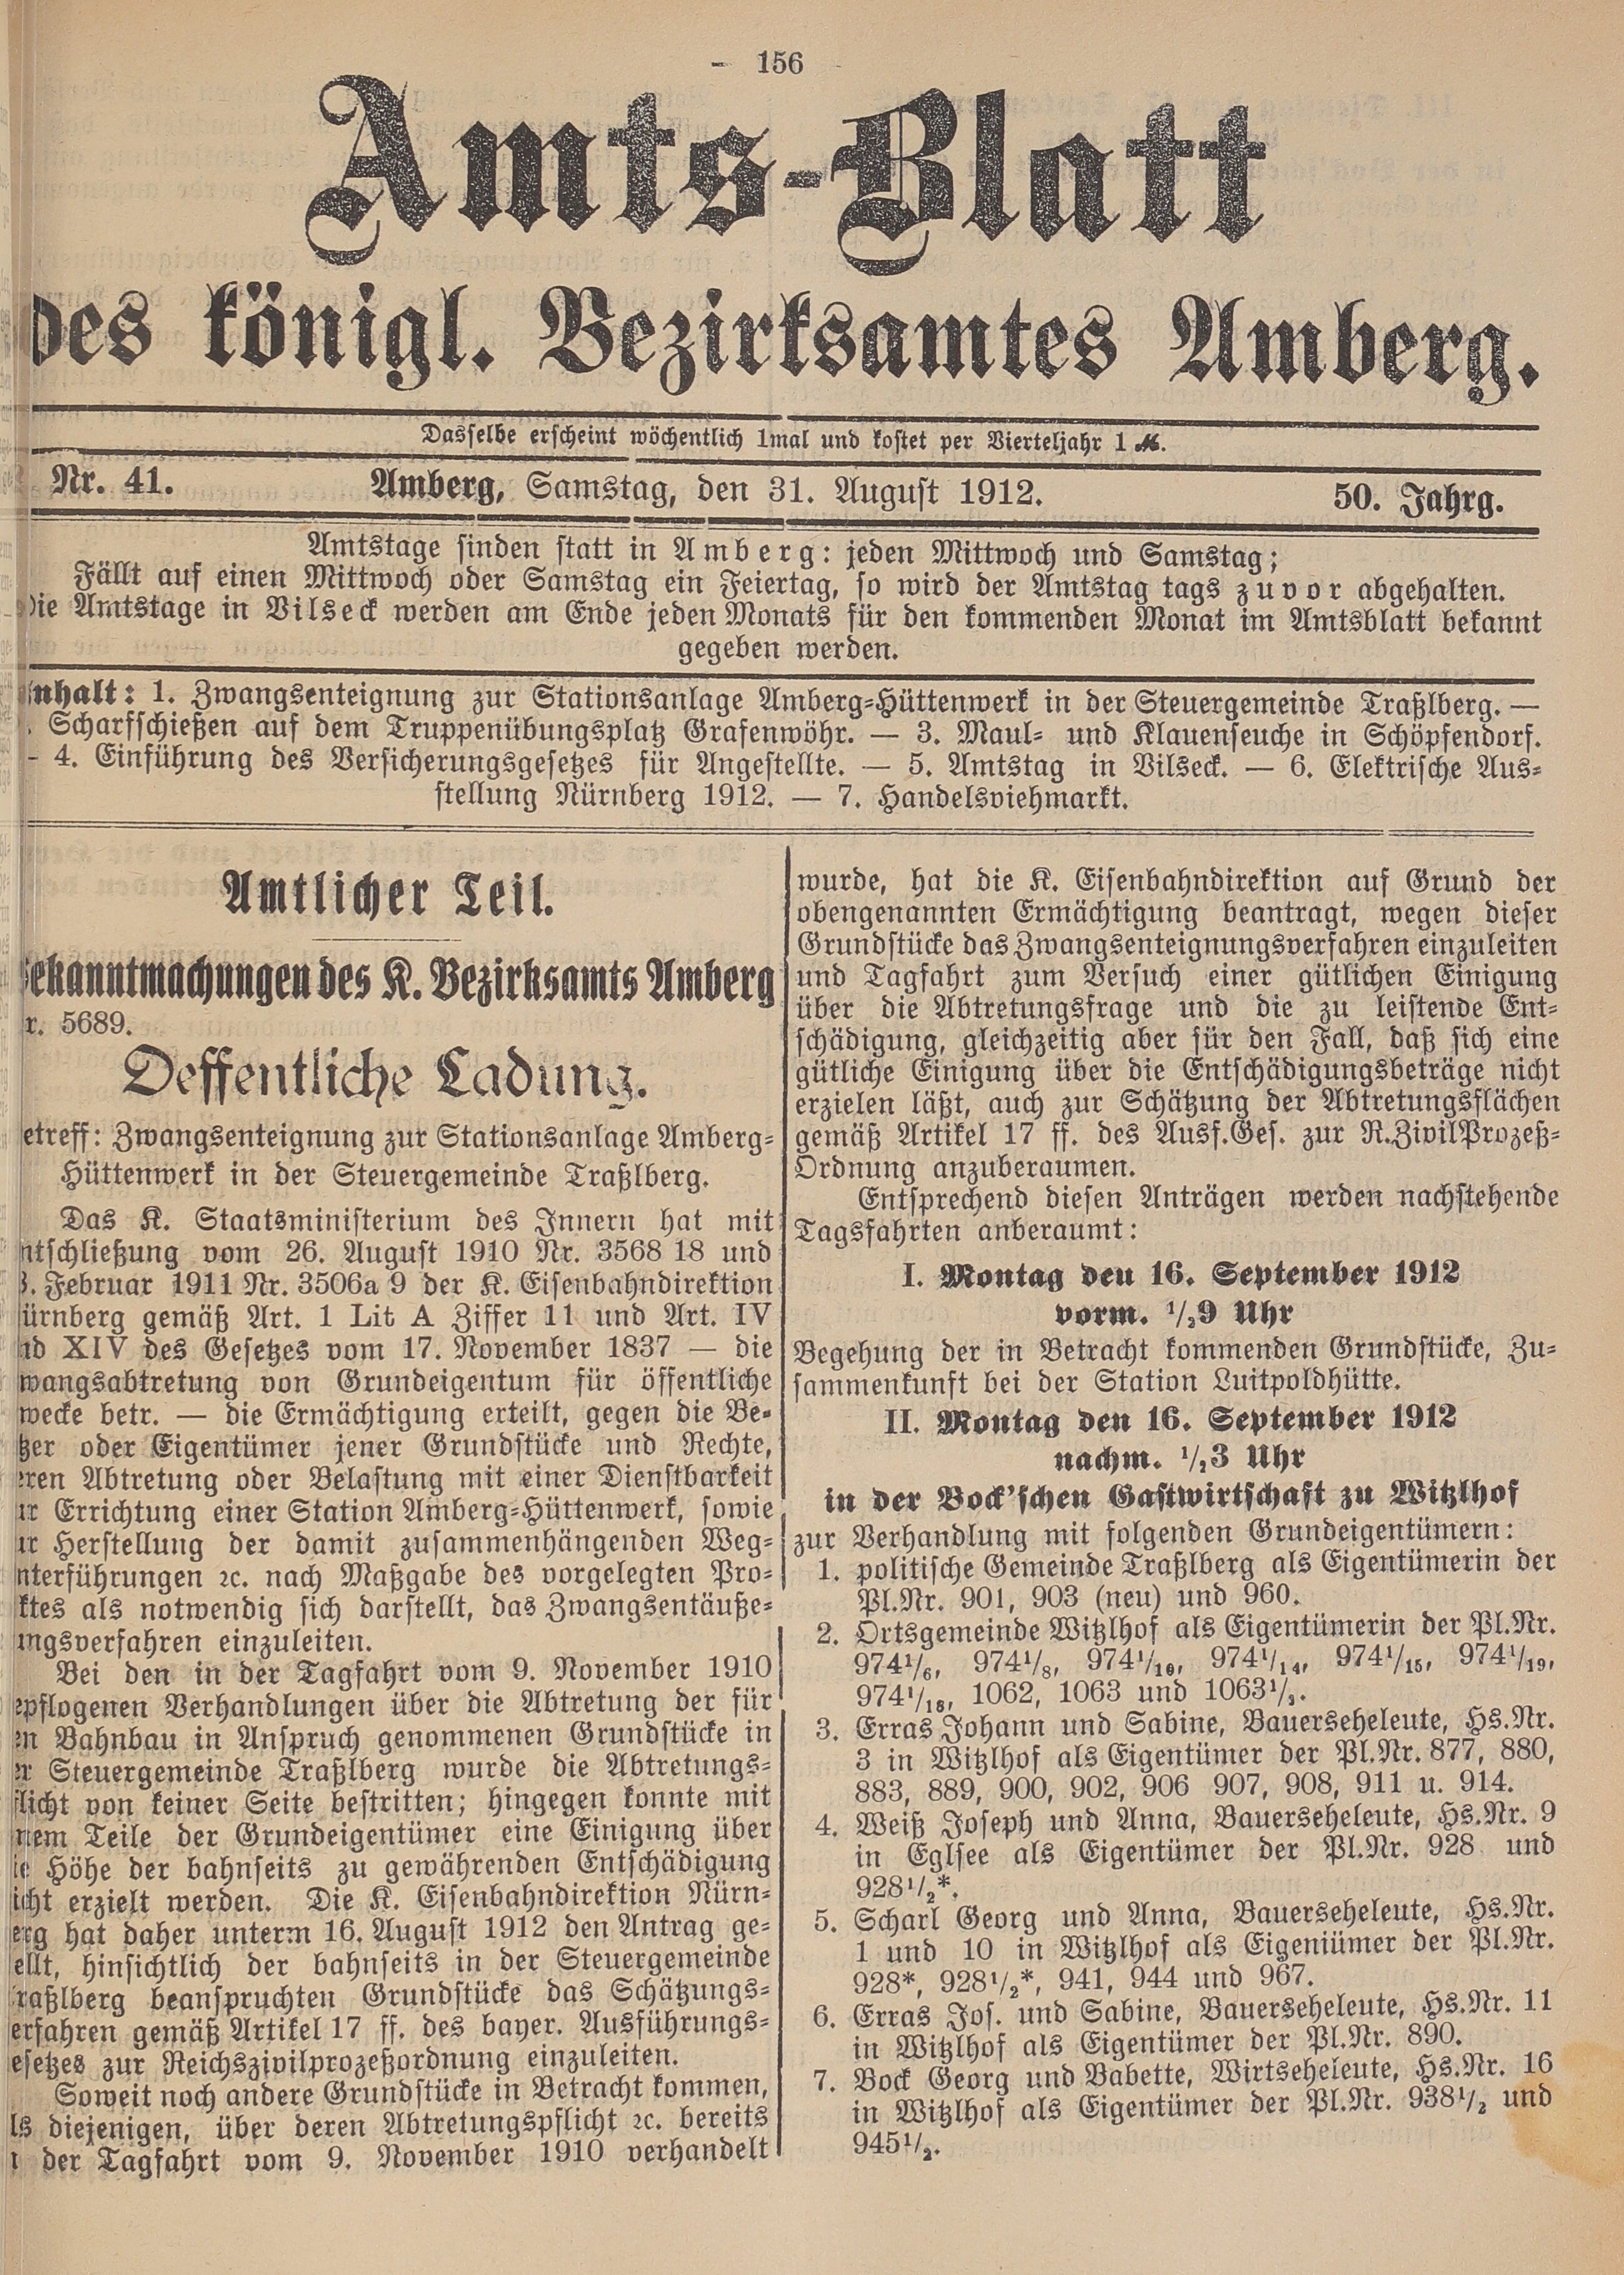 1. amtsblatt-amberg-1912-08-31-n41_4250